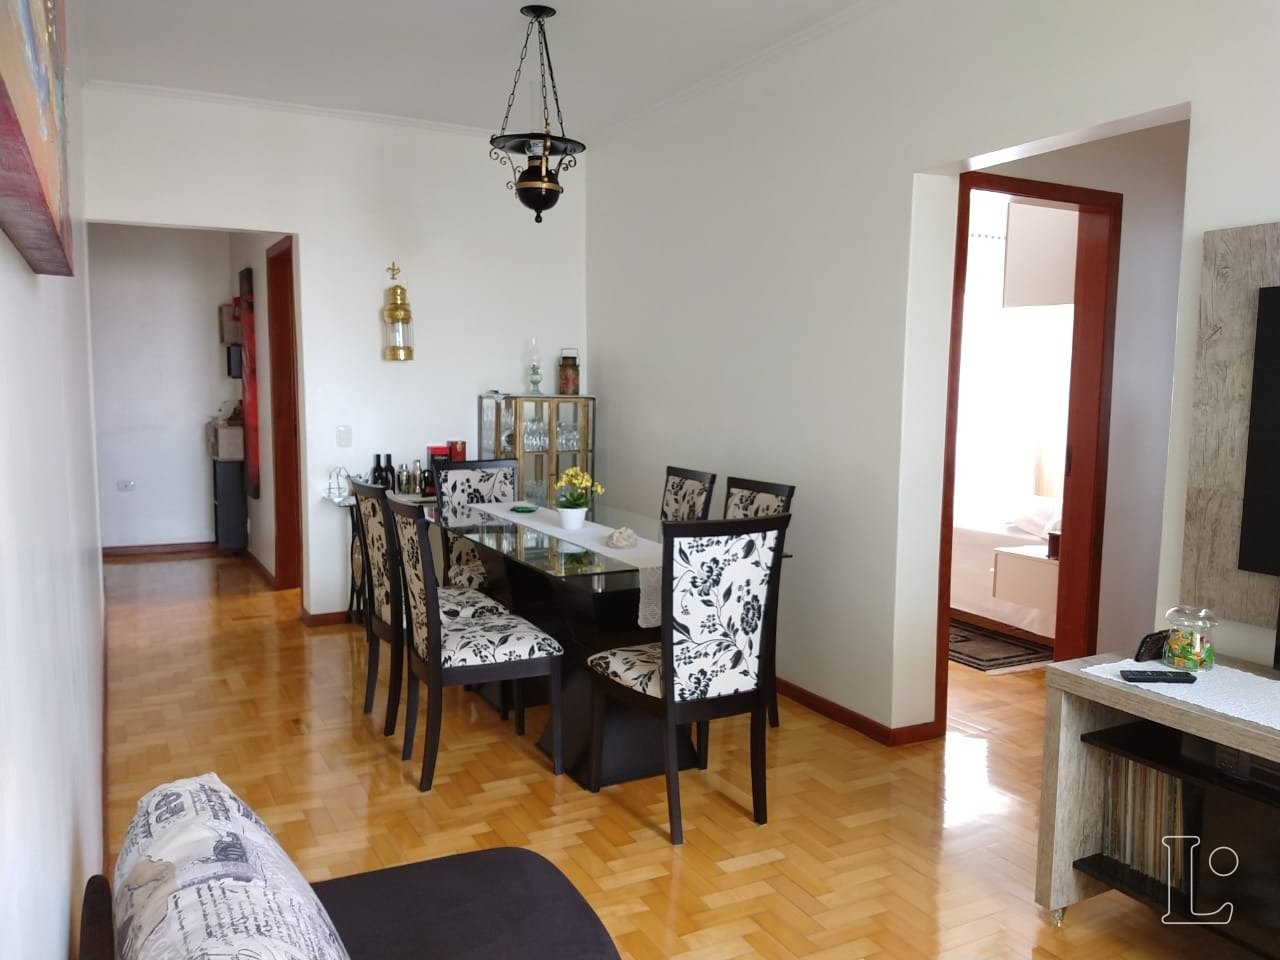 Apartamento com 67m², 2 dormitórios no bairro São João em Porto Alegre para Comprar